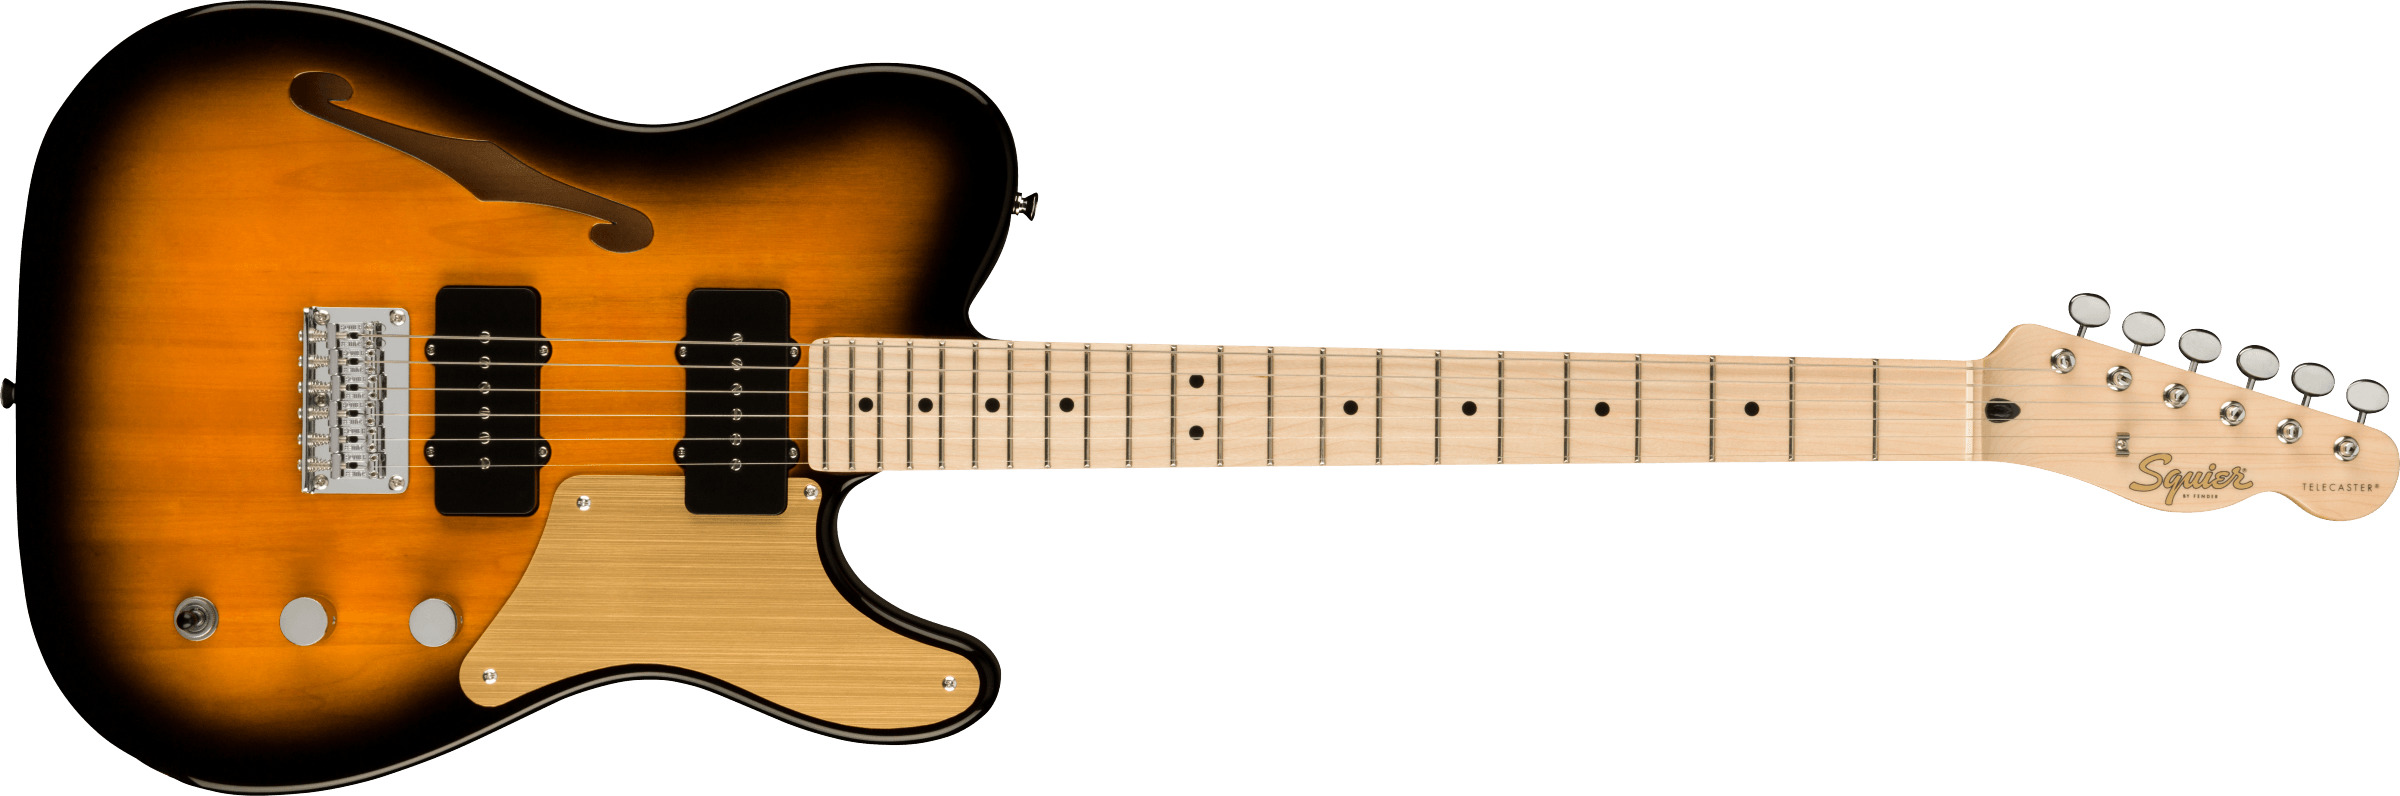 Se Fender Squier Paranormal Carbronita Telecaster Thinline El-guitar (Sunburst) hos Drum City